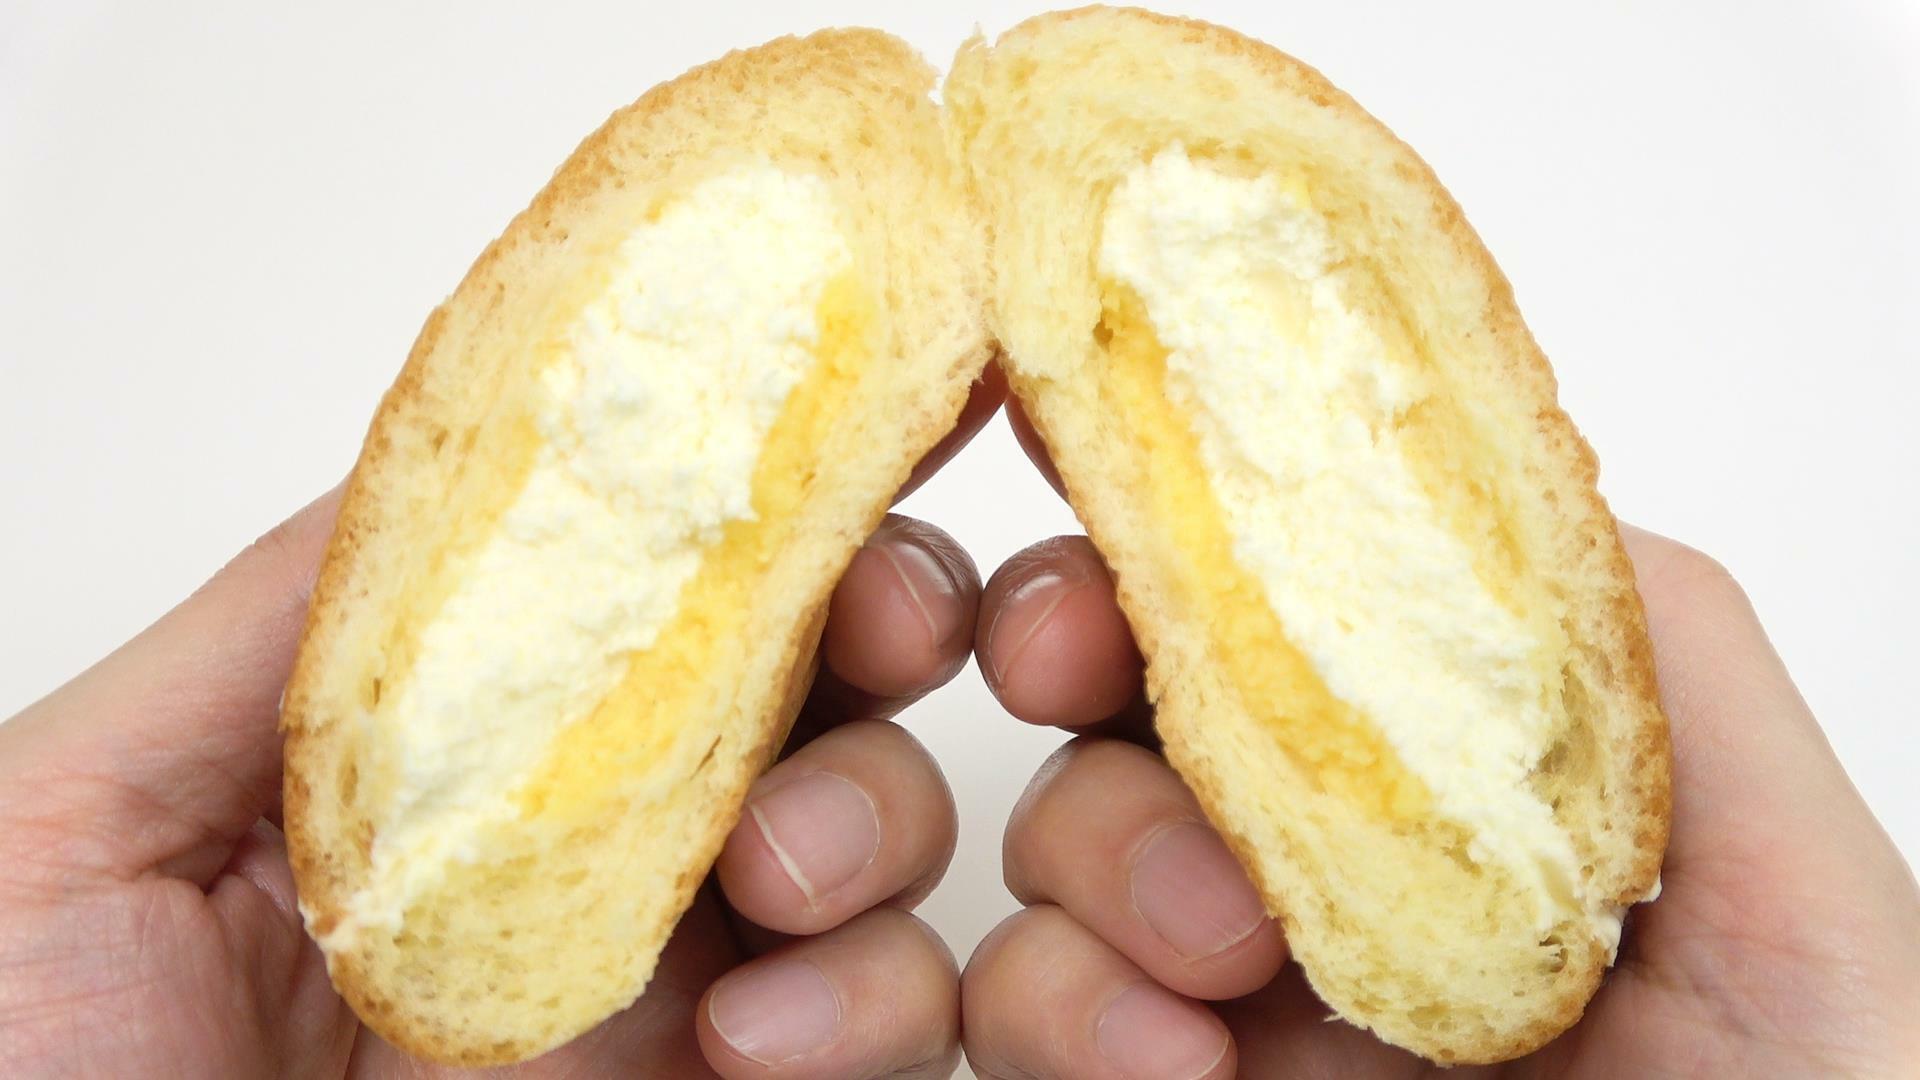 黄色み掛かったブリオッシュ生地が美味しそうなファミマのとろけるたっぷりクリームパン